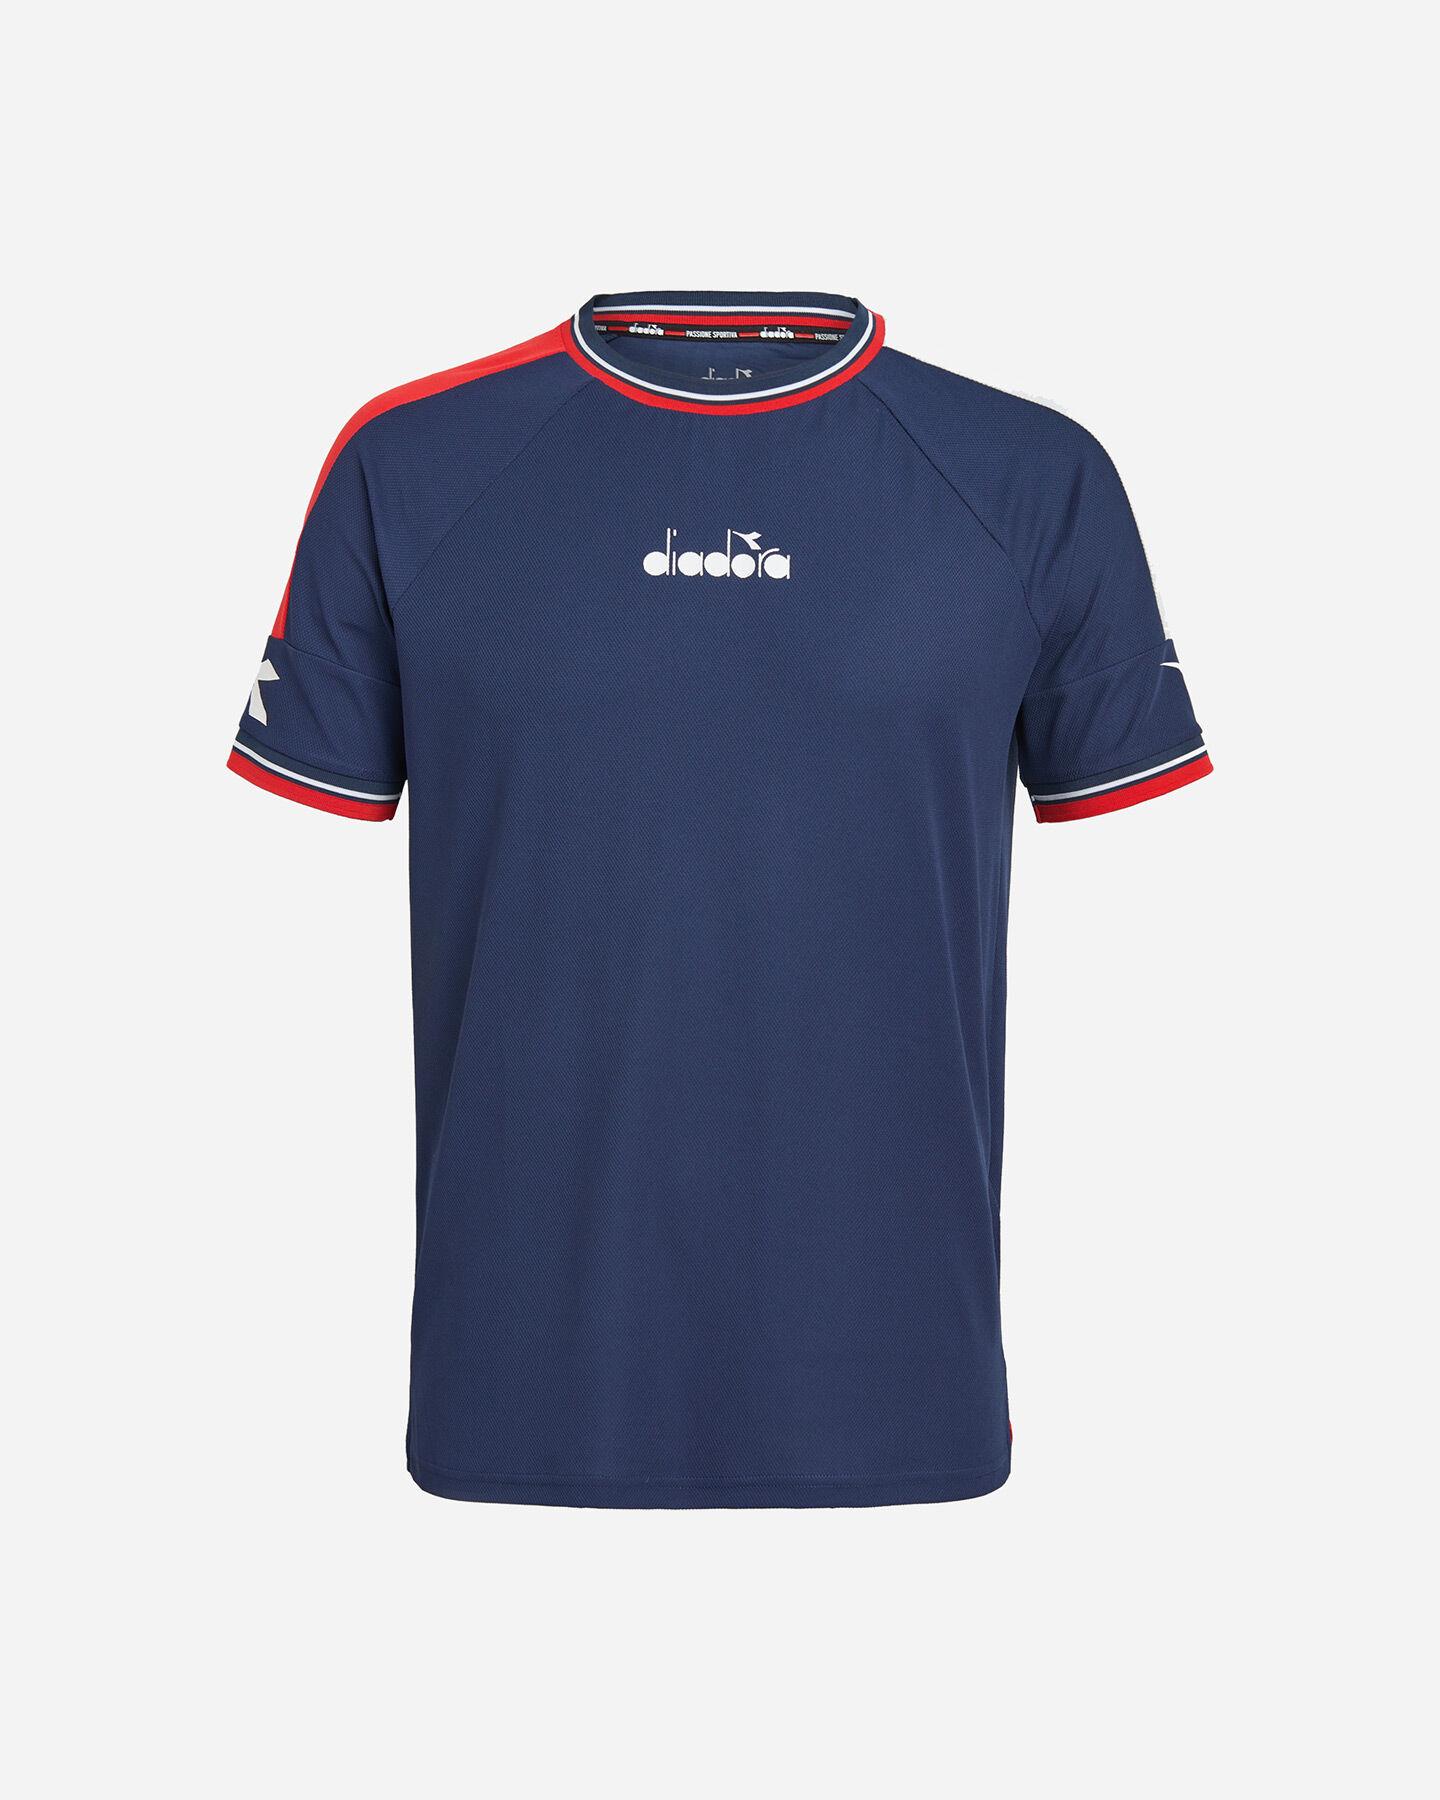  T-Shirt tennis DIADORA ICON M S5529667|60063|L scatto 0